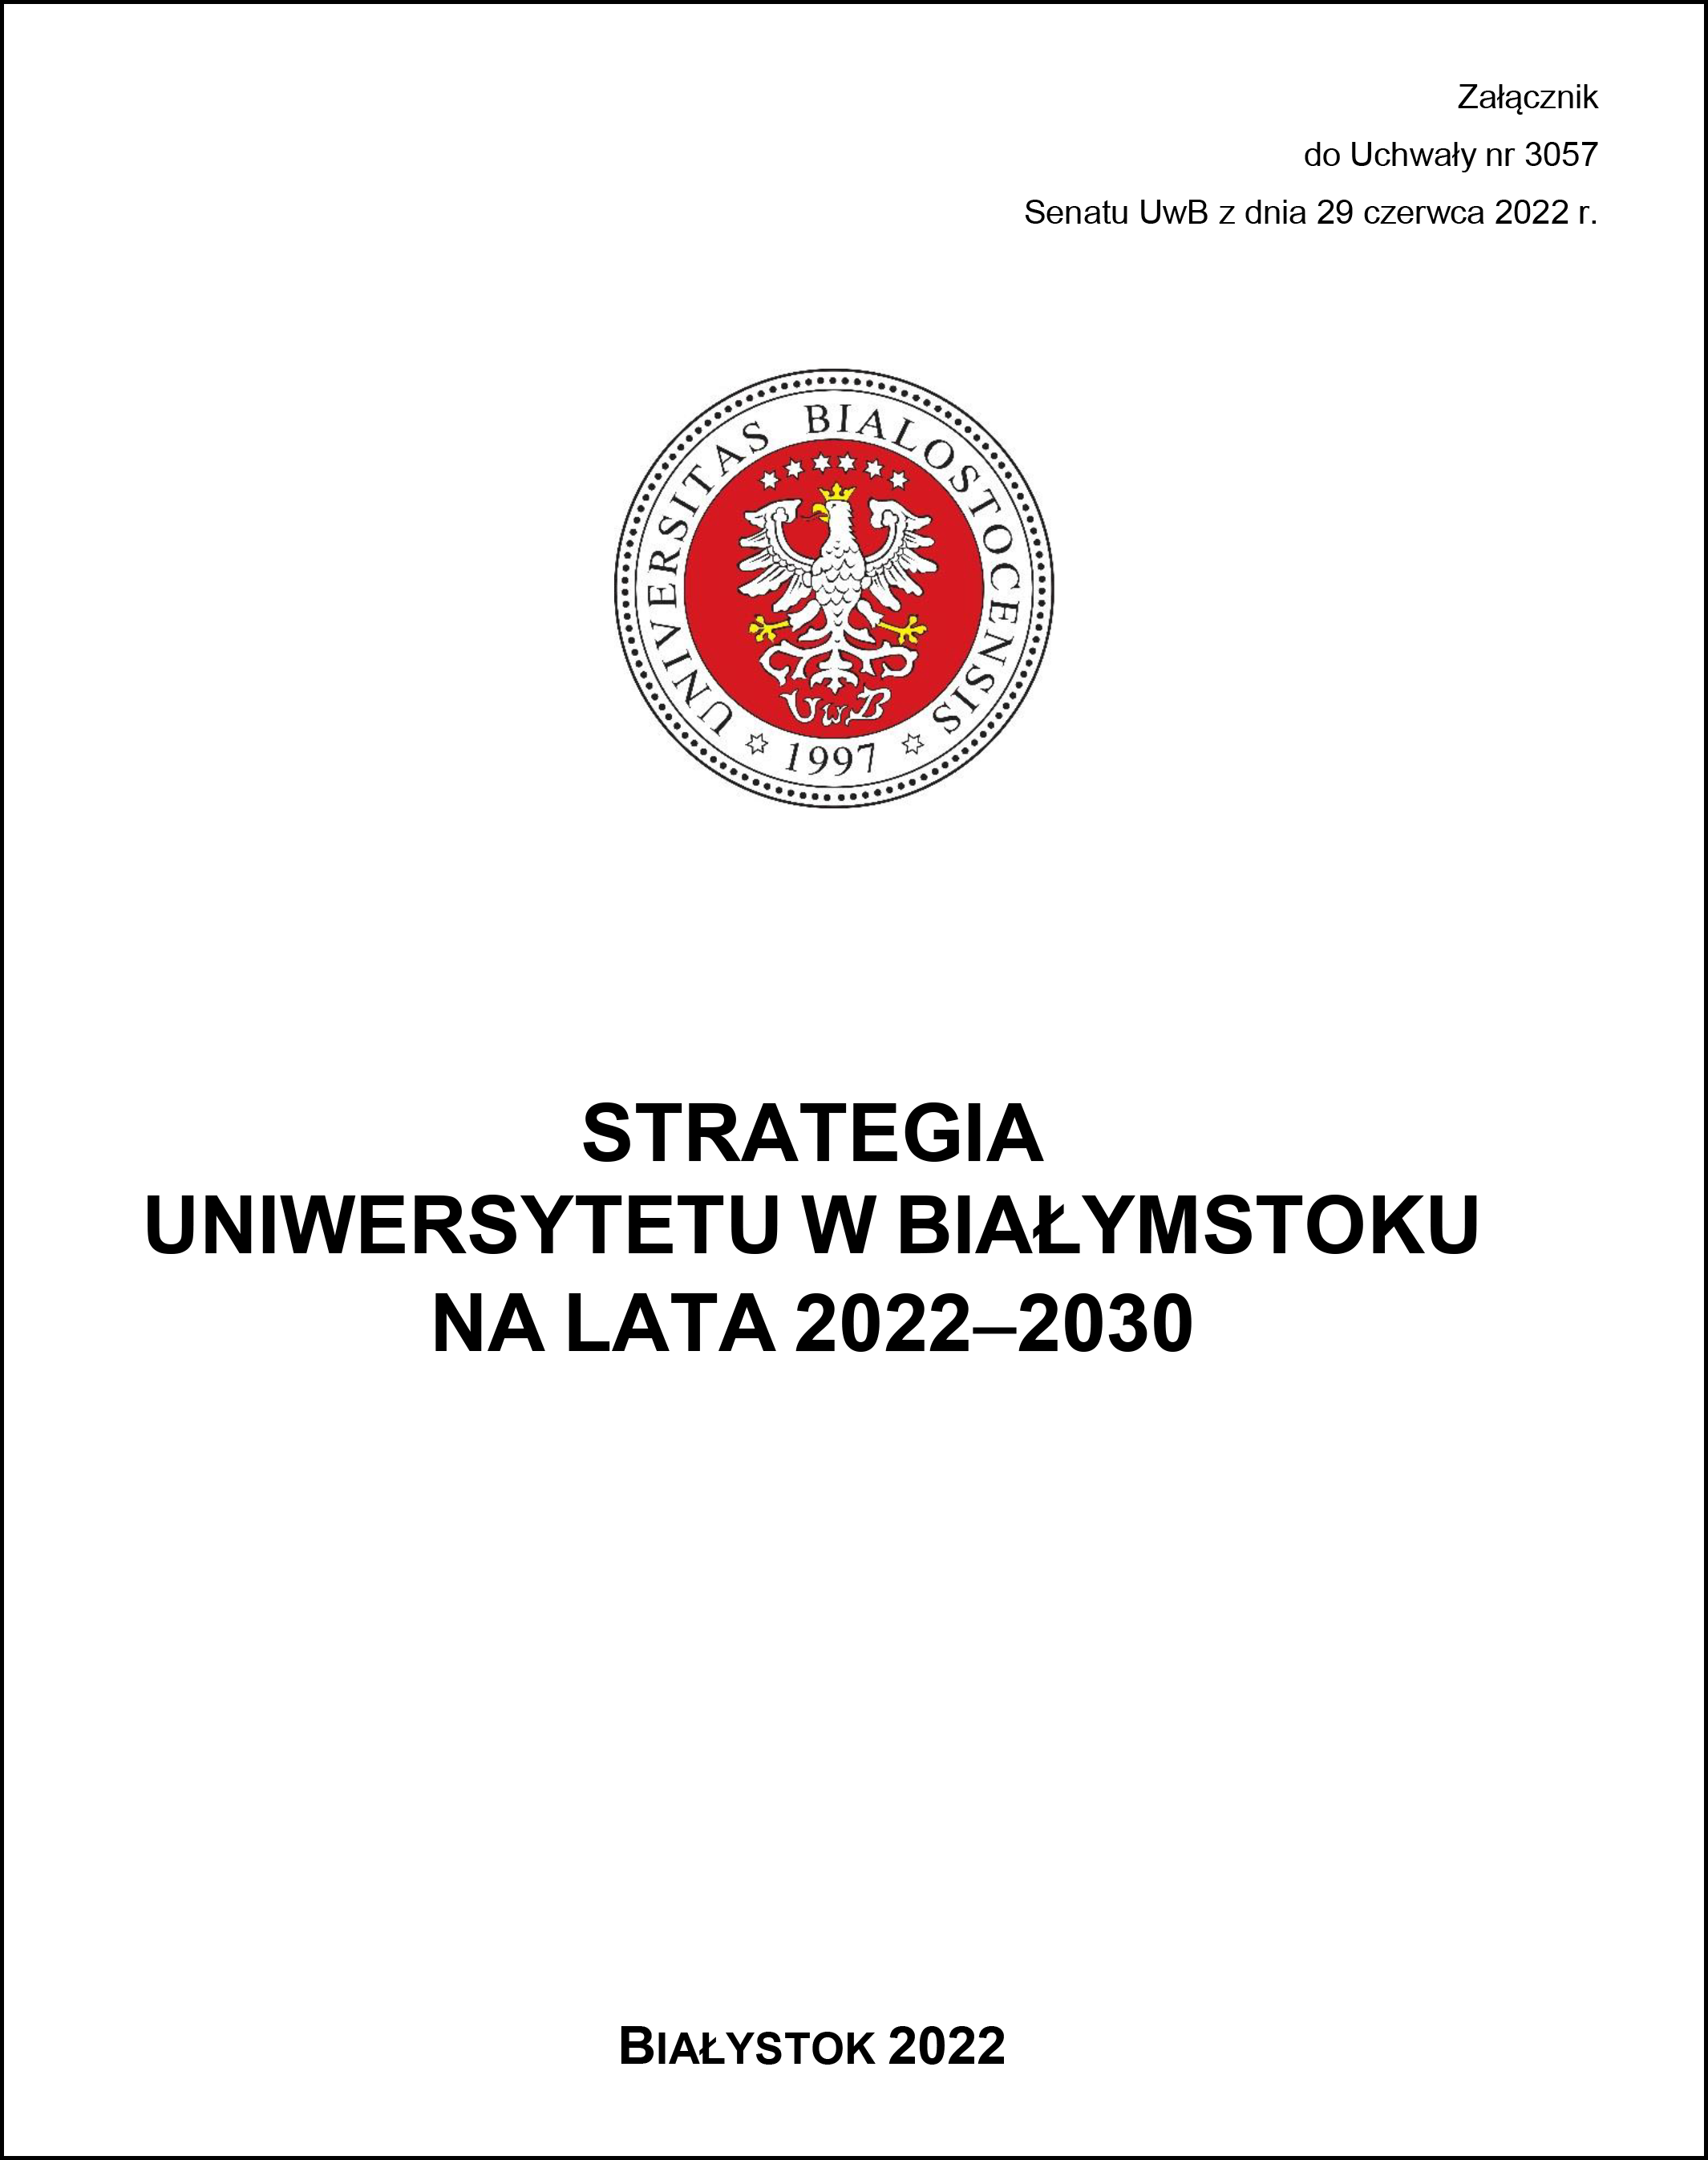 Strategia UwB na lata 2022-2030